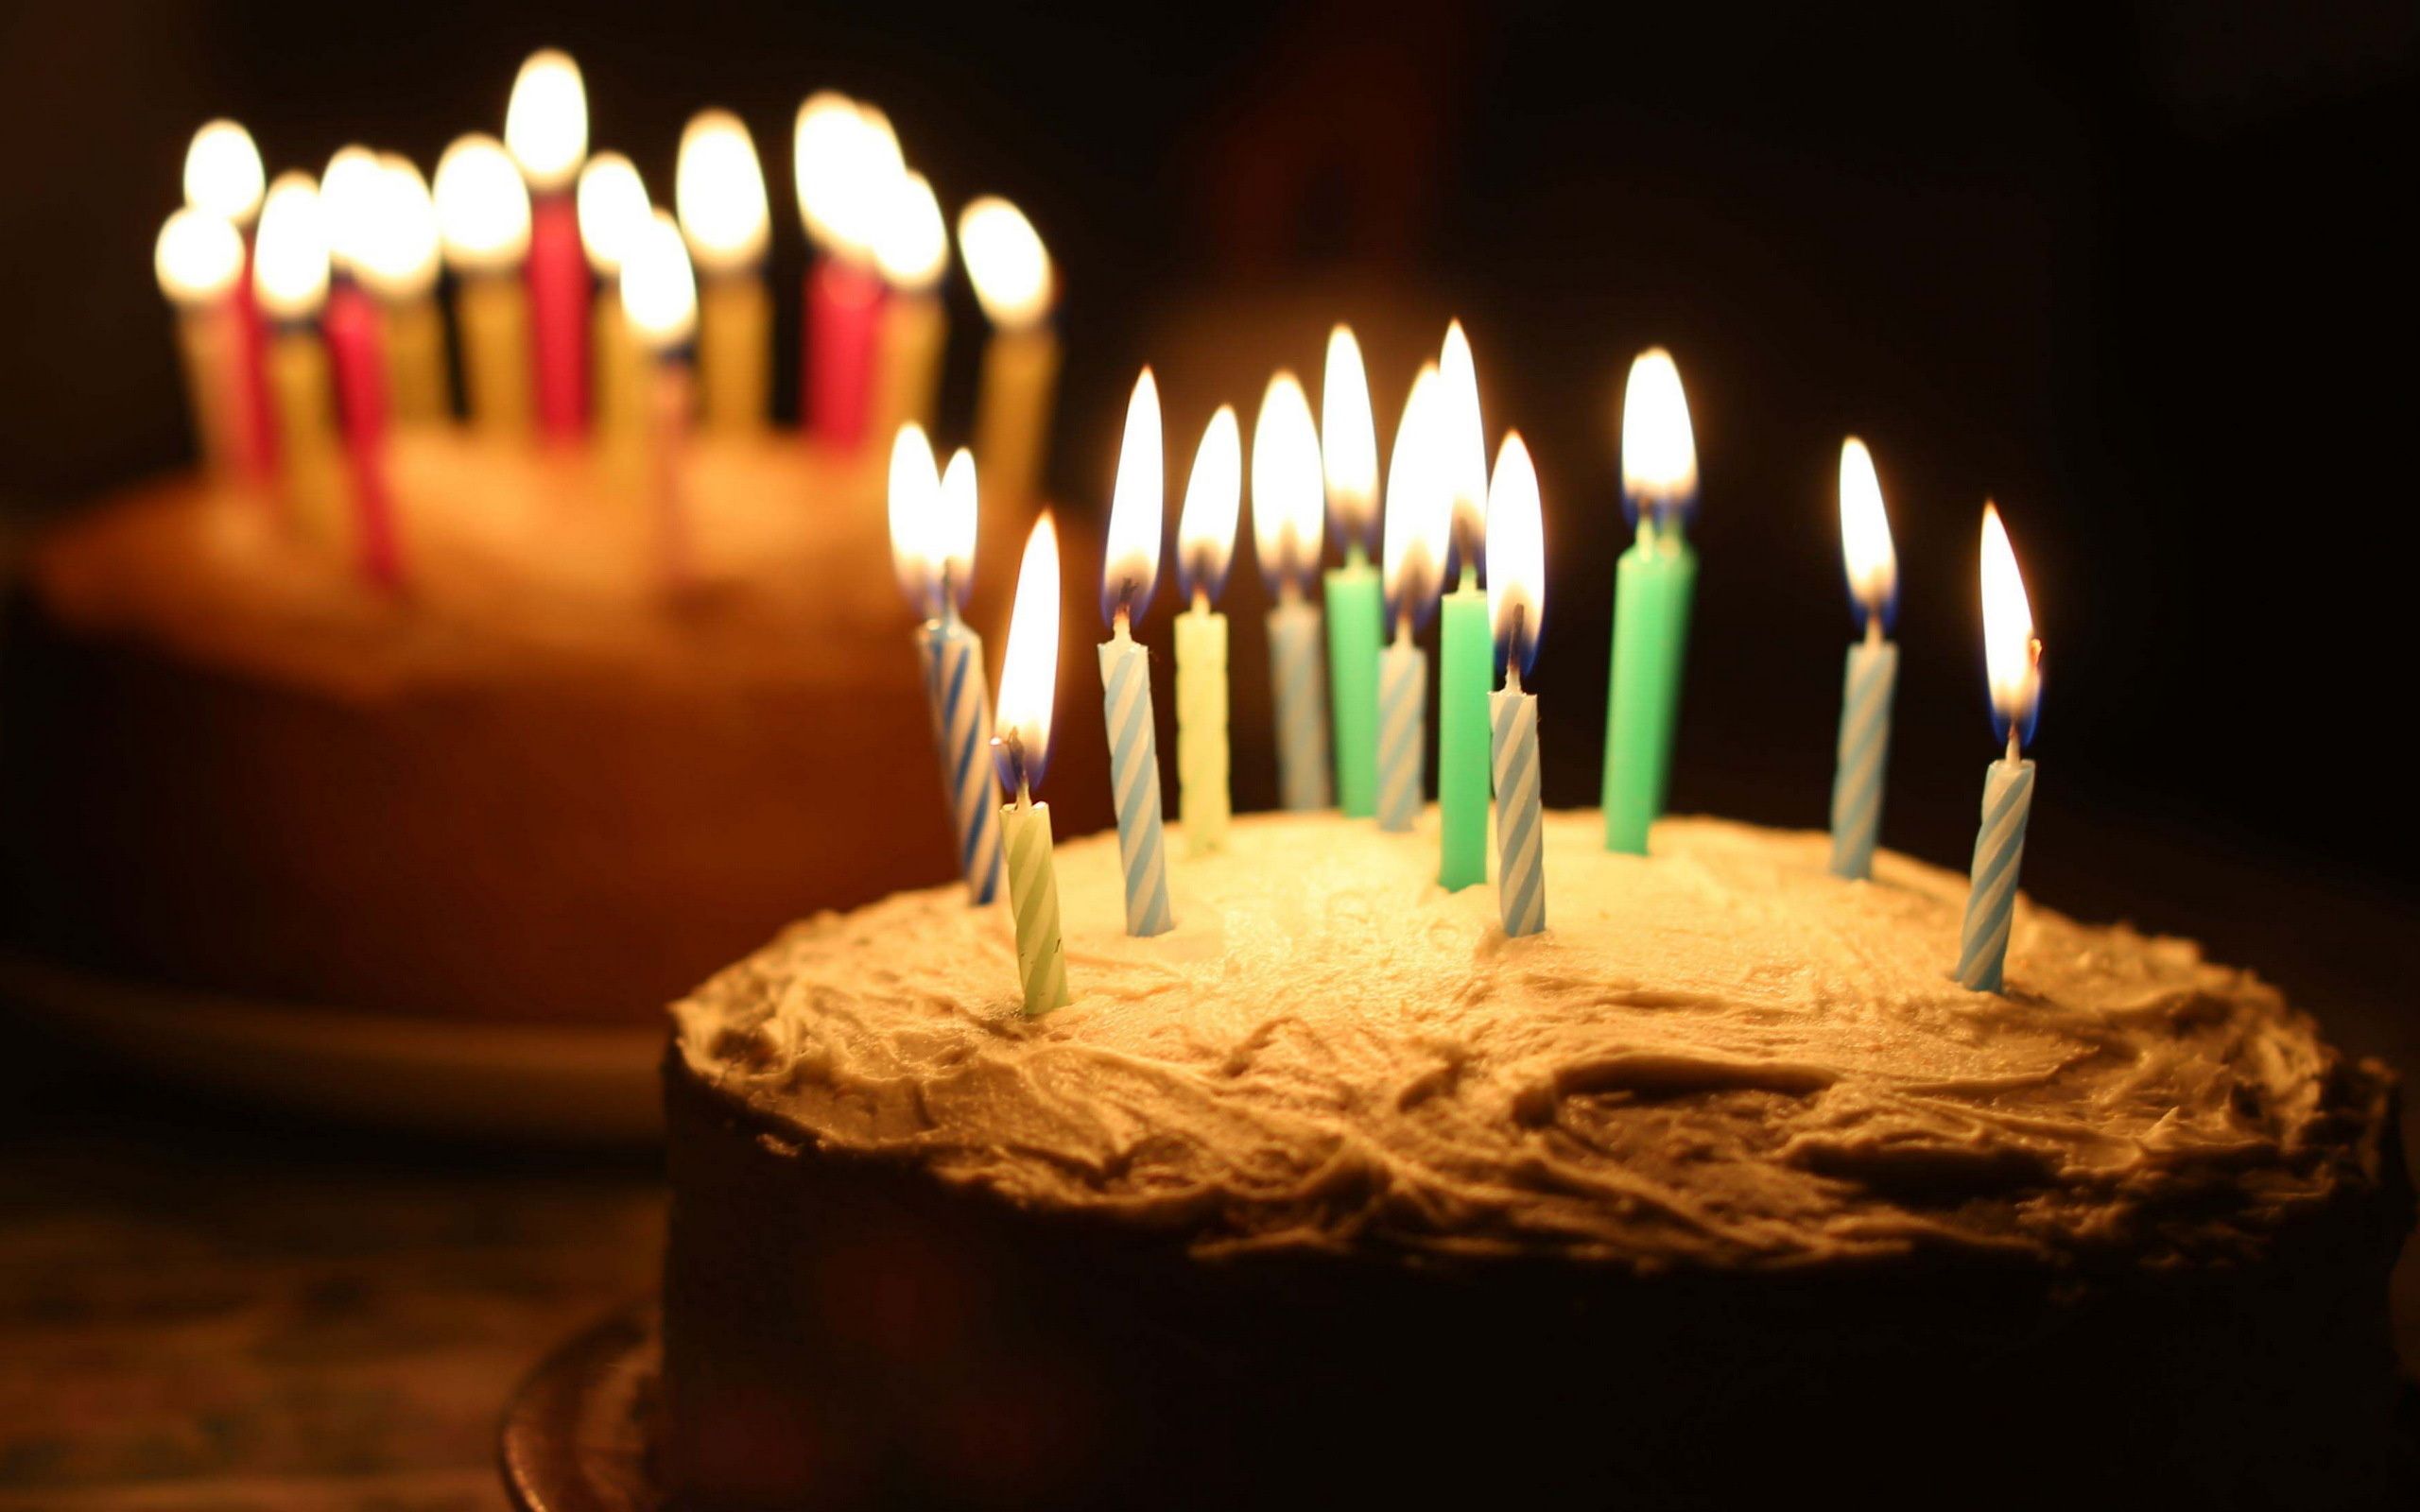 تصویر دو کیک تولد خوشگل با شمع های روشن برای پروفایل